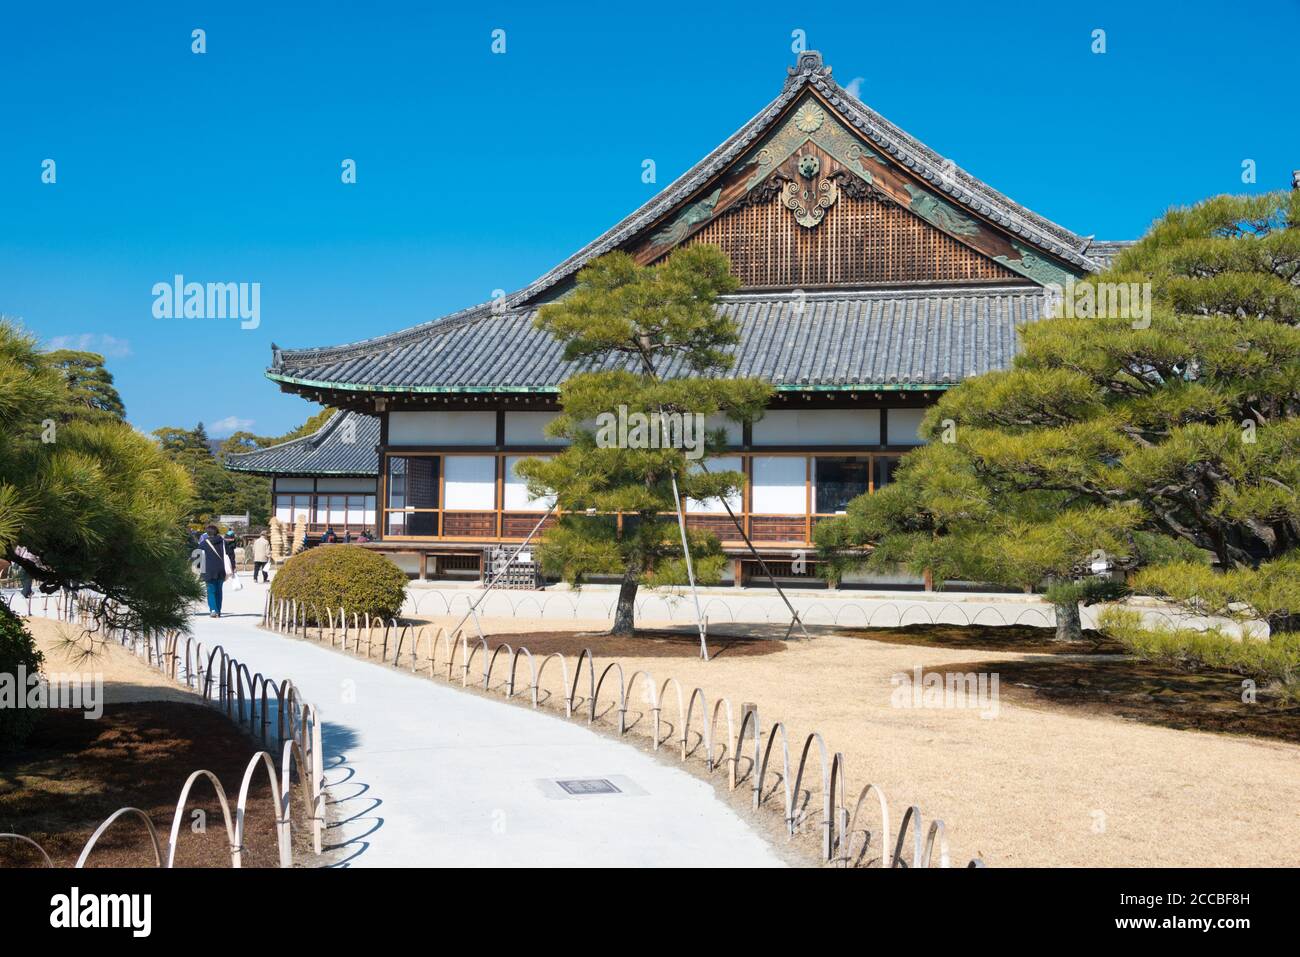 Kyoto, Japan - Nijo-jo Castle in Kyoto, Japan. It is part of UNESCO World Heritage Site. Stock Photo